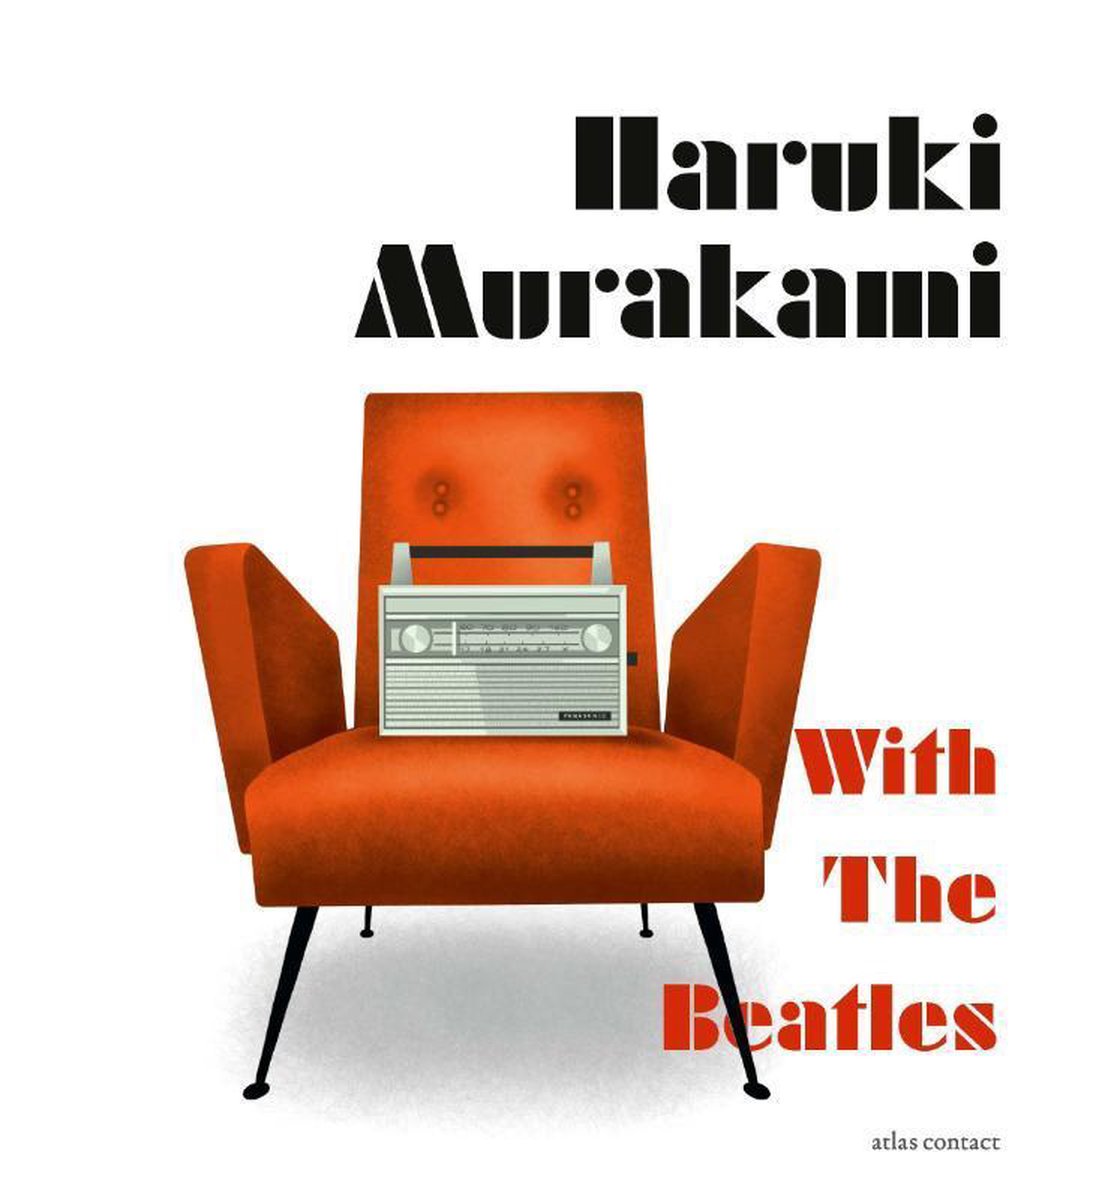 With The Beatles - Haruki Murakami